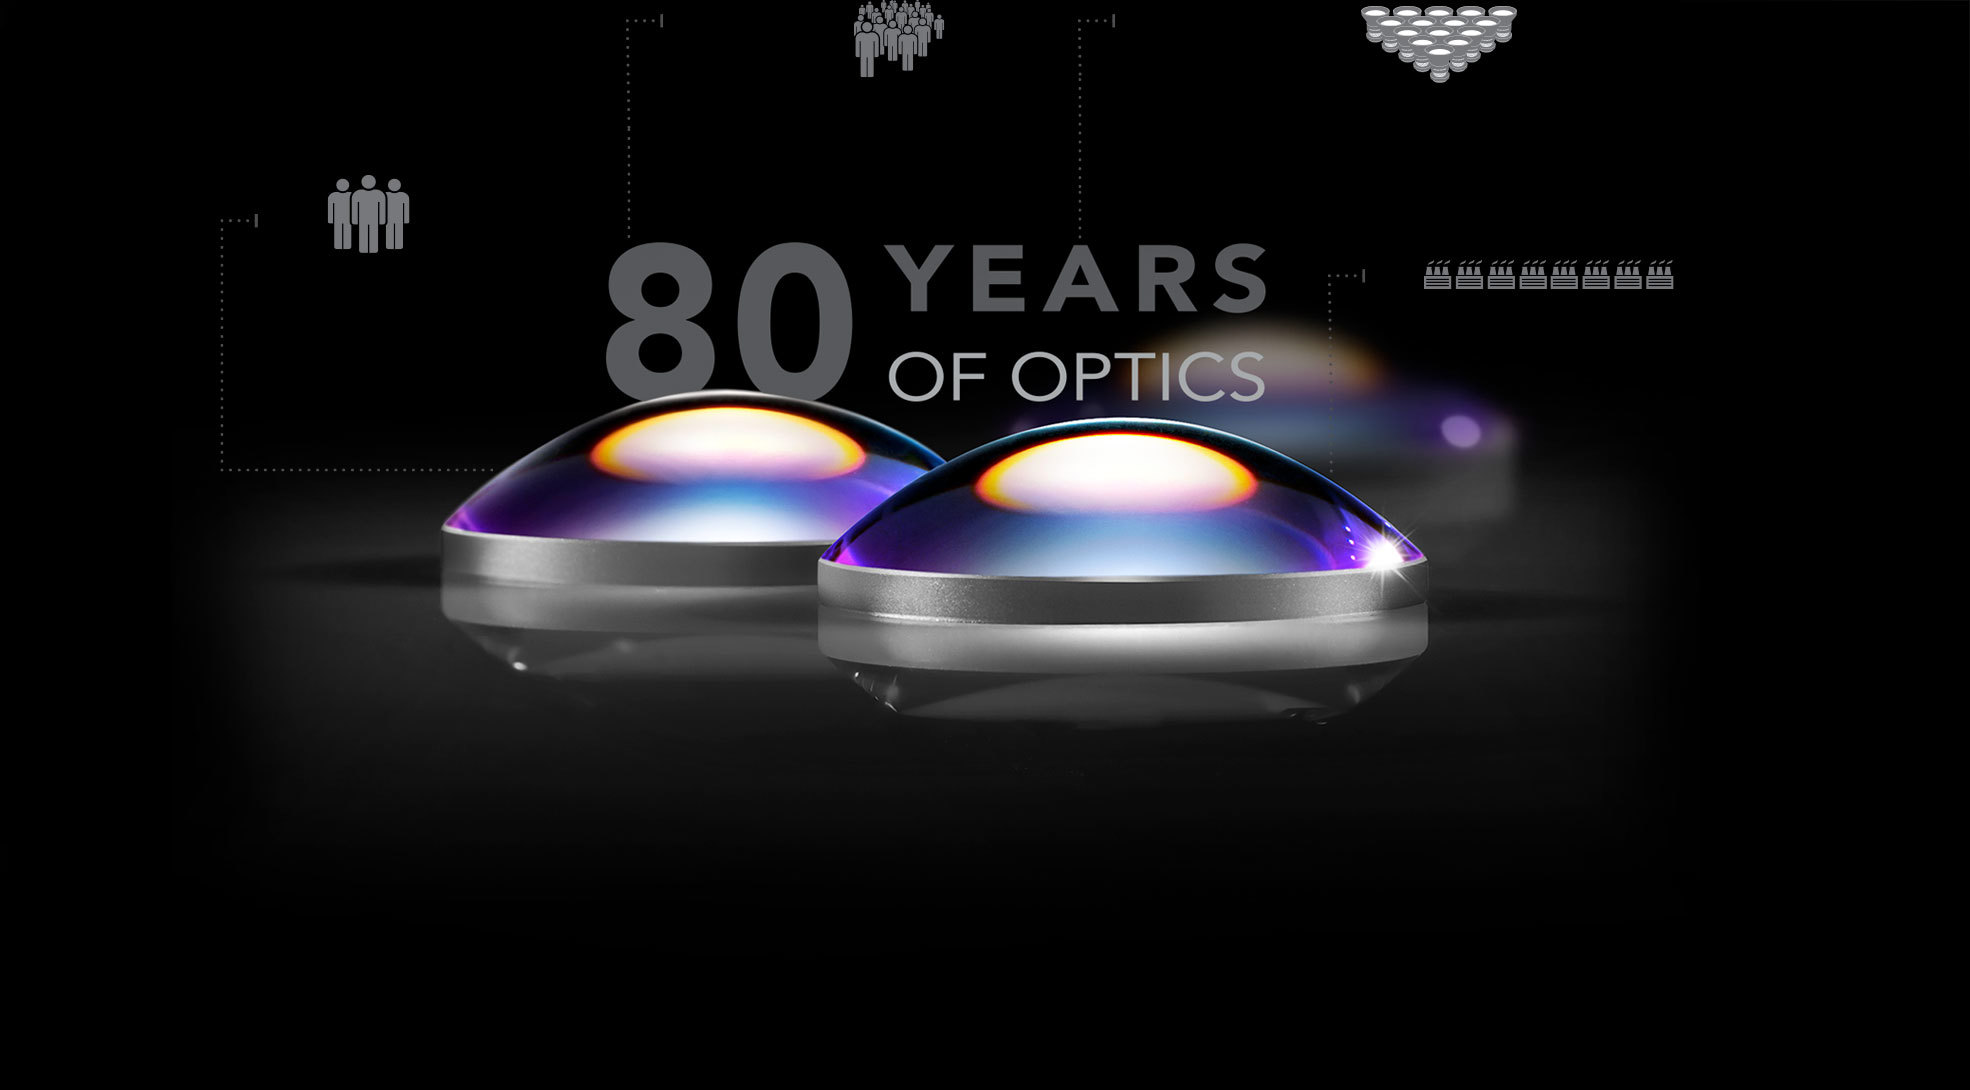 80 years of optics